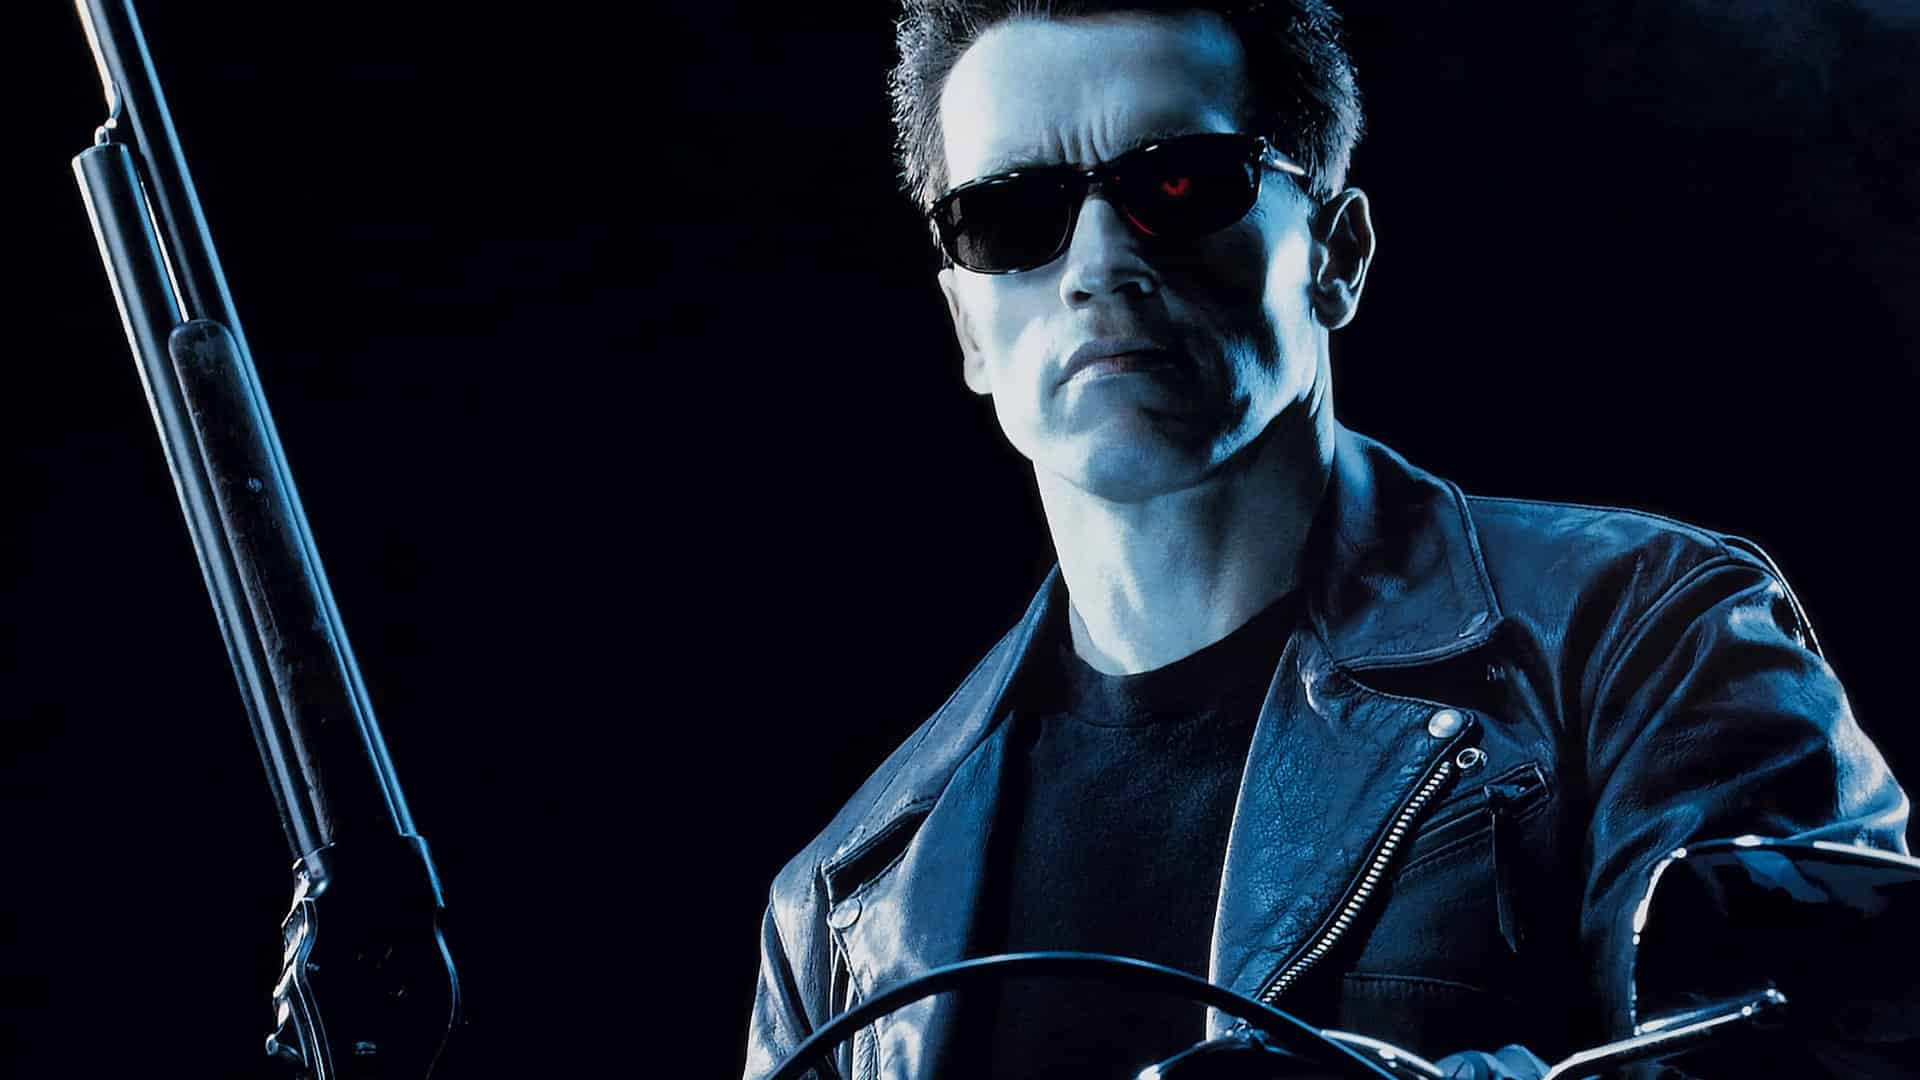 Roligt vetande om Terminator-filmerna